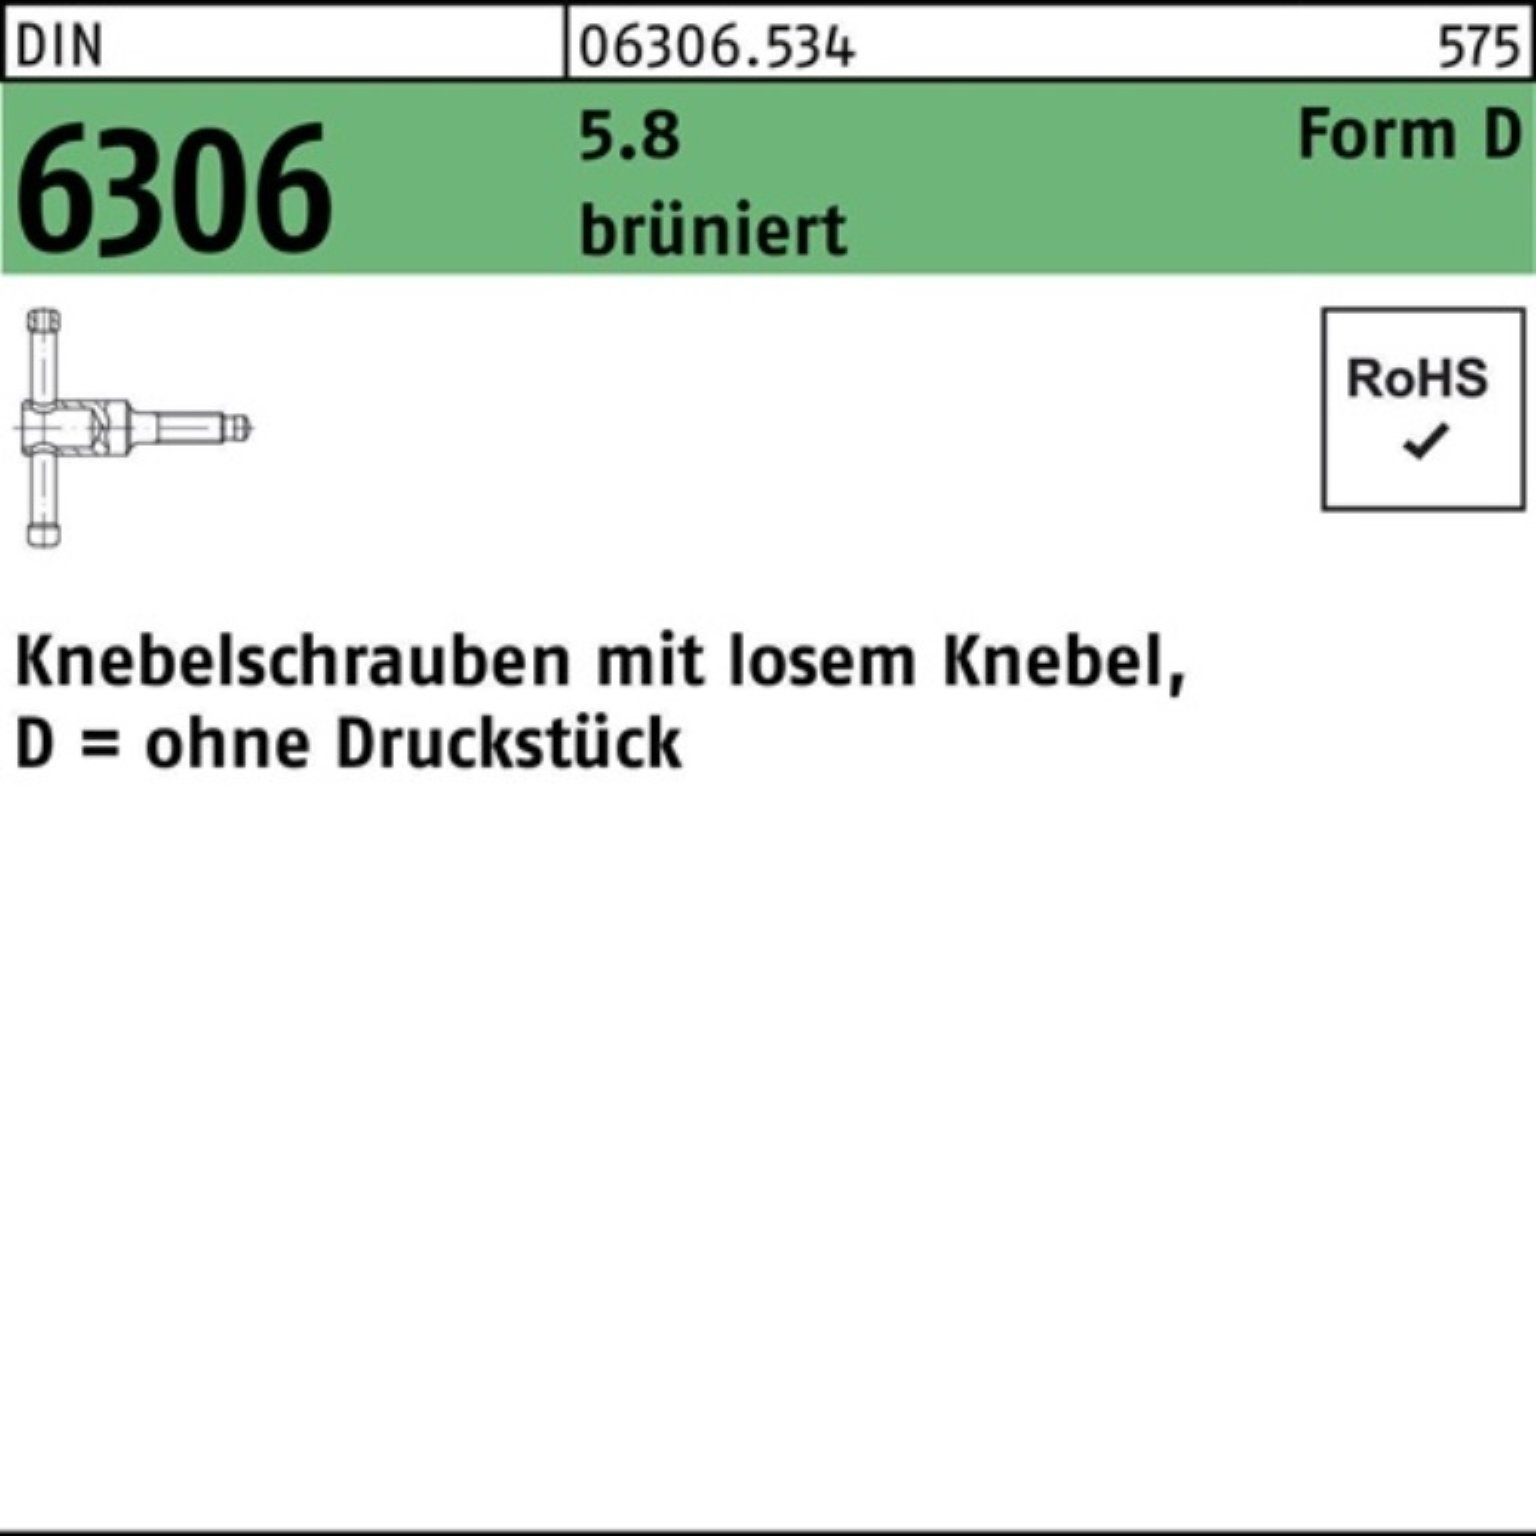 Reyher Schraube 100er Pack Knebelschraube DIN 6306 losen Knebel DM 20x 70 5.8 brünier